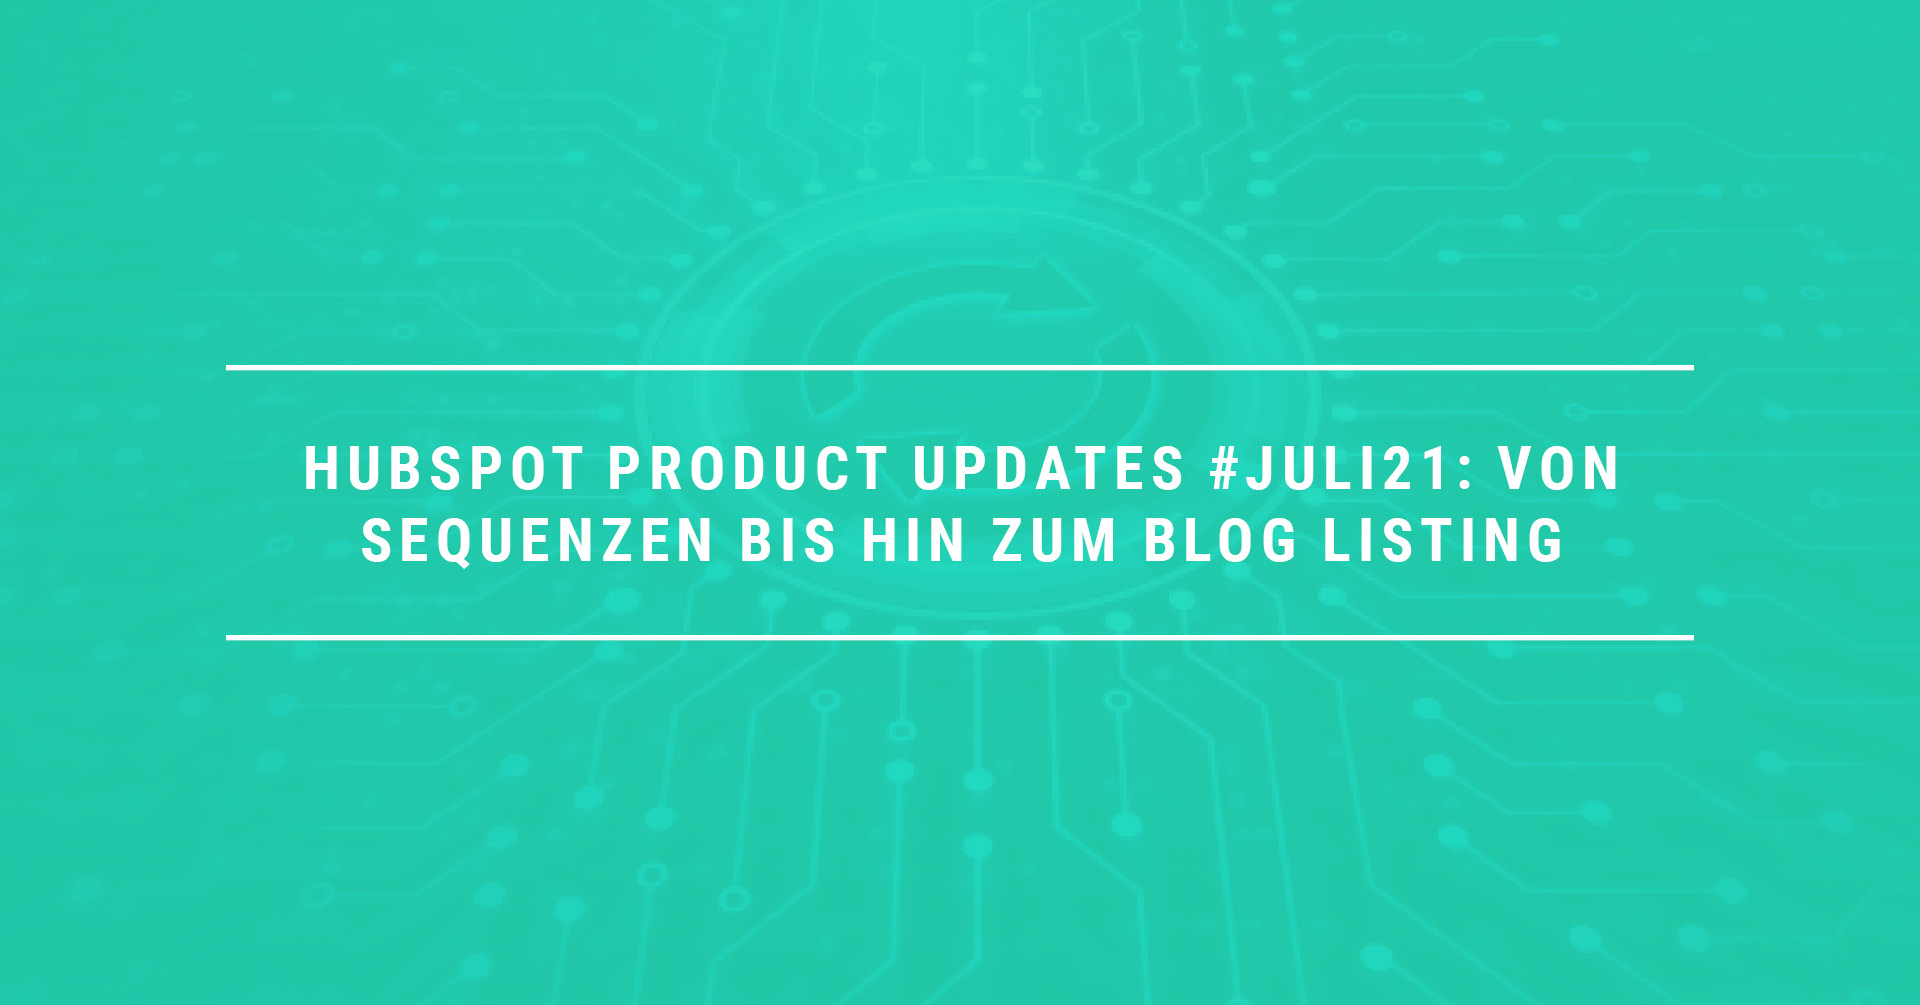 HubSpot Product Updates #Juli21: Updates Von Sequenzen bis hin zum Blog Listing